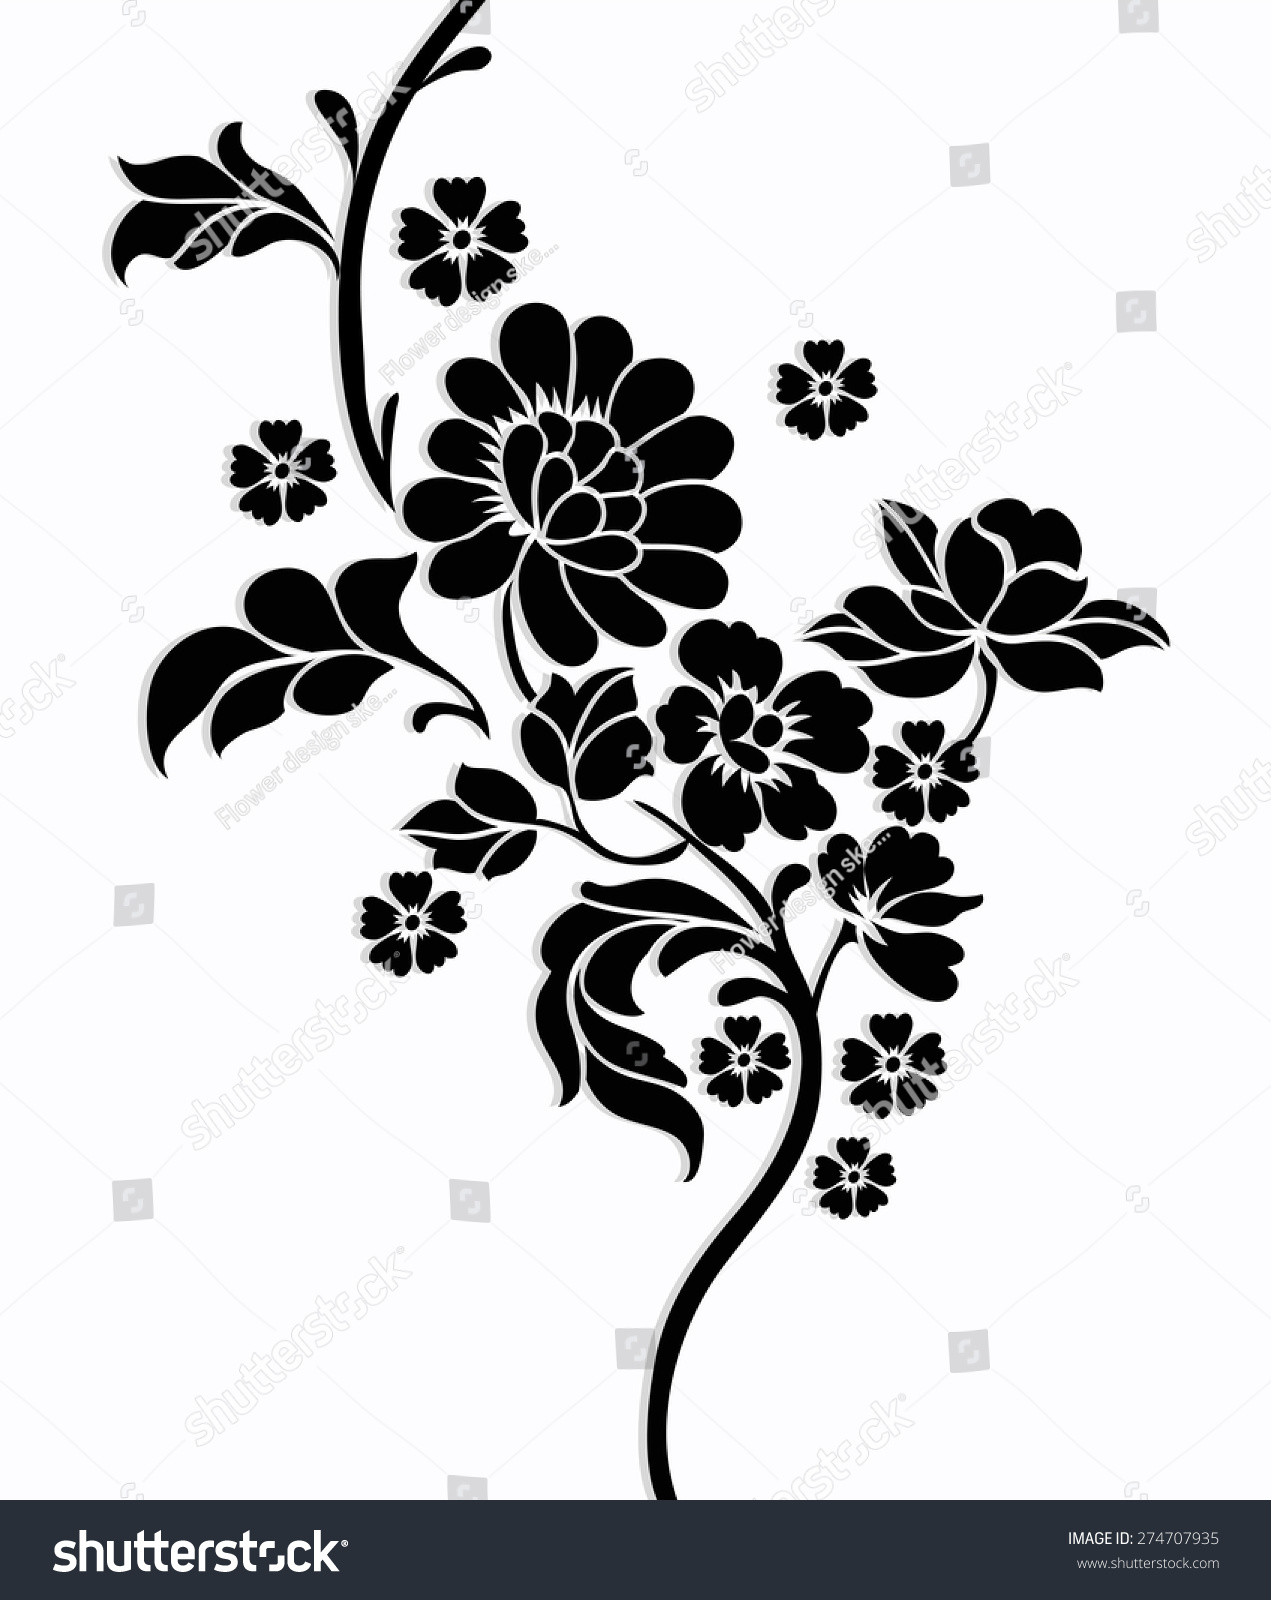 flower motif clip art - photo #6